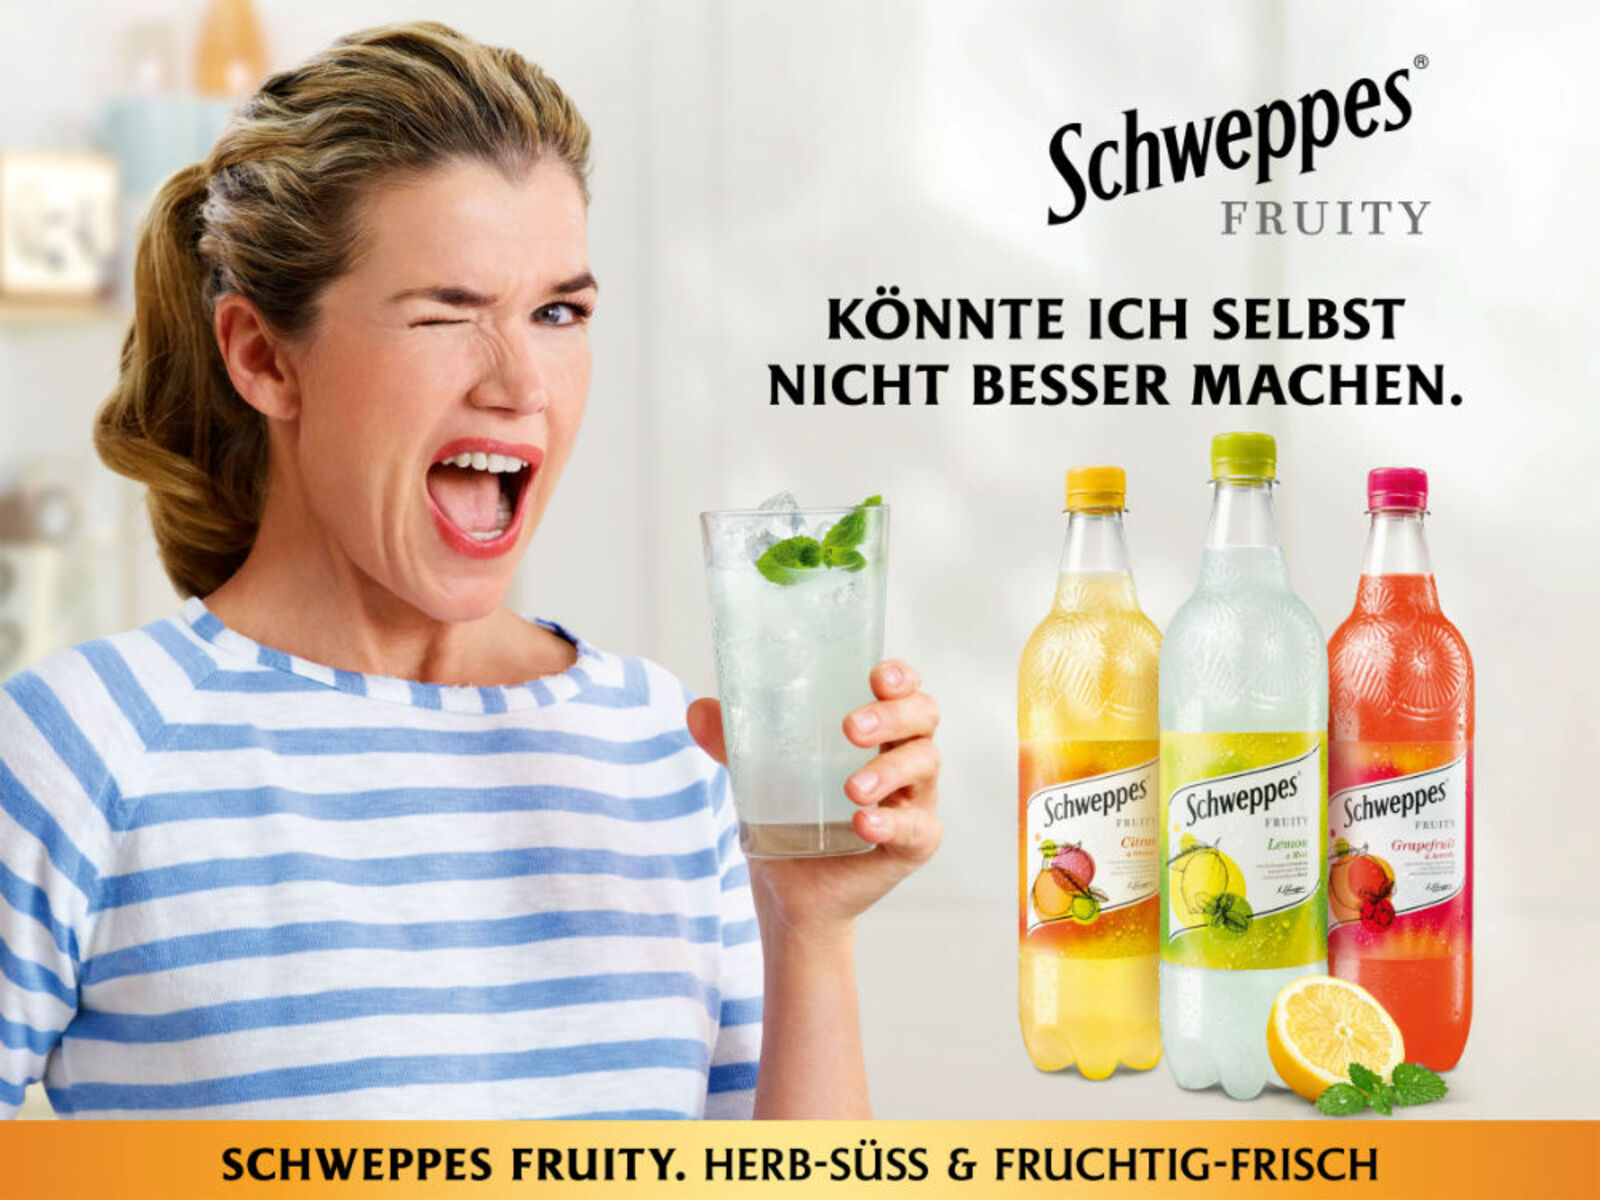 Neuer TV-Spot: Anke Engelke wirbt für Schweppes Fruity